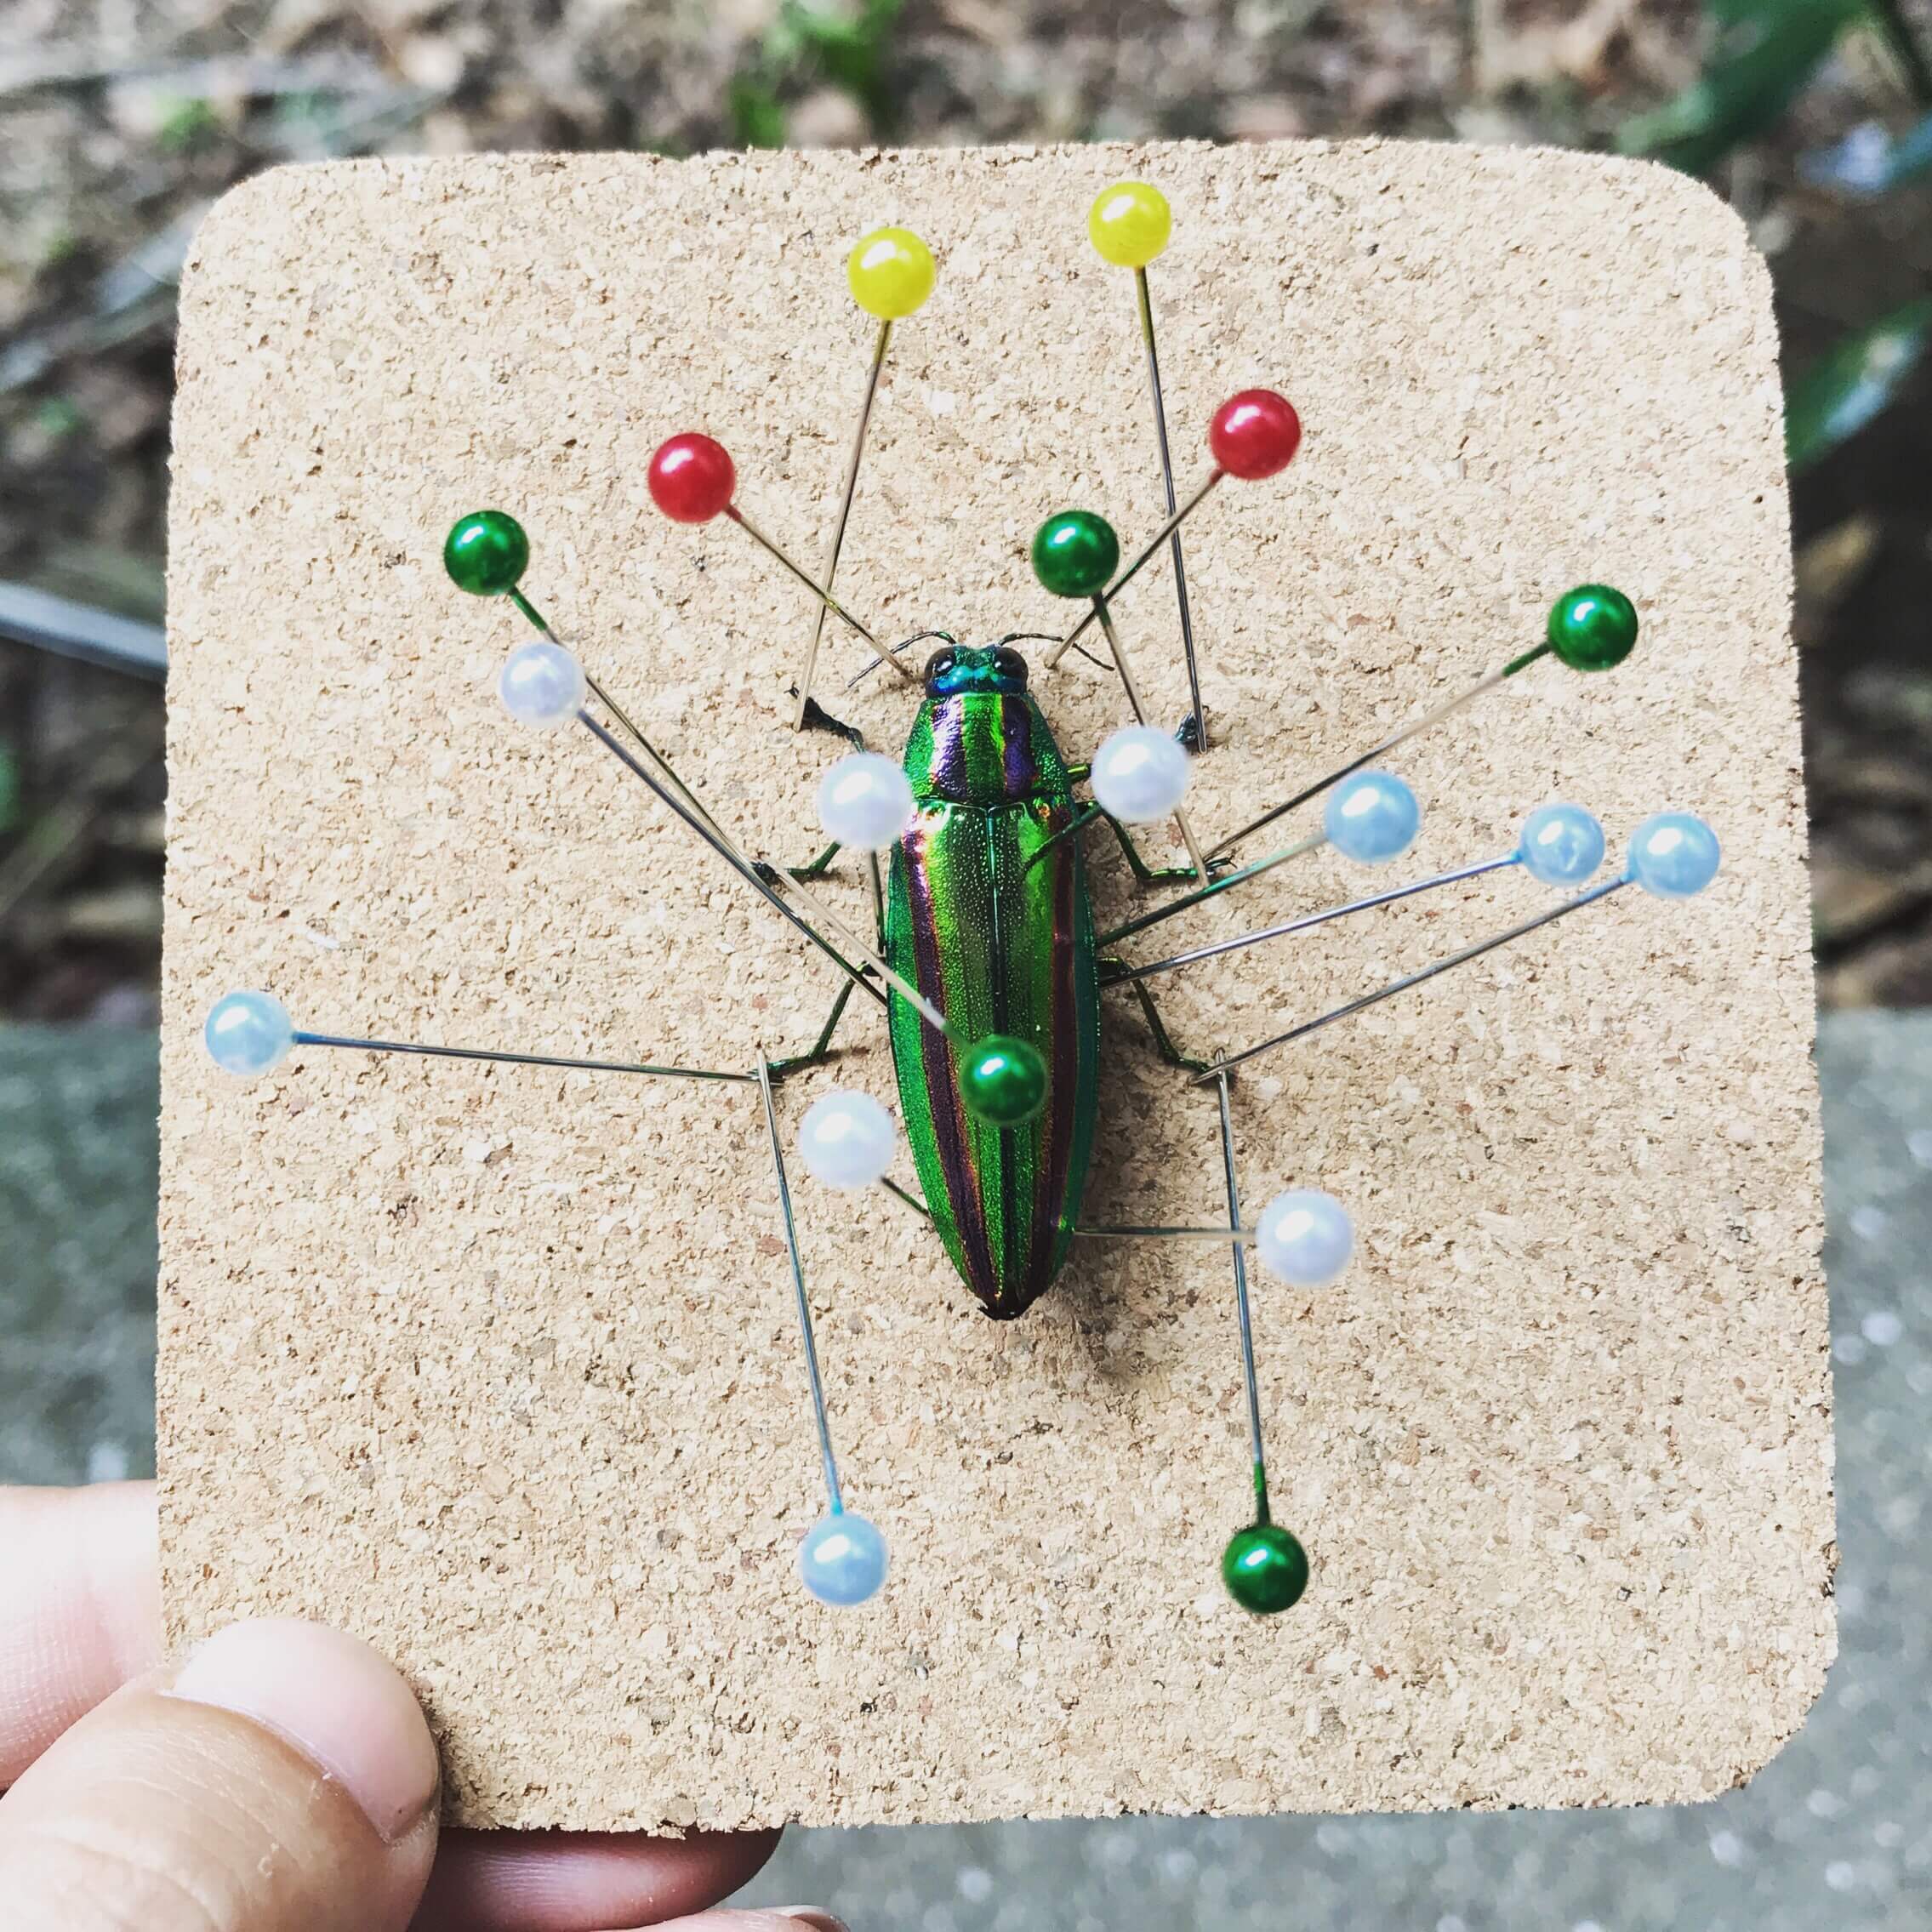 自由研究 昆虫標本の作り方 夏休みの宿題 日刊 小作人 見習